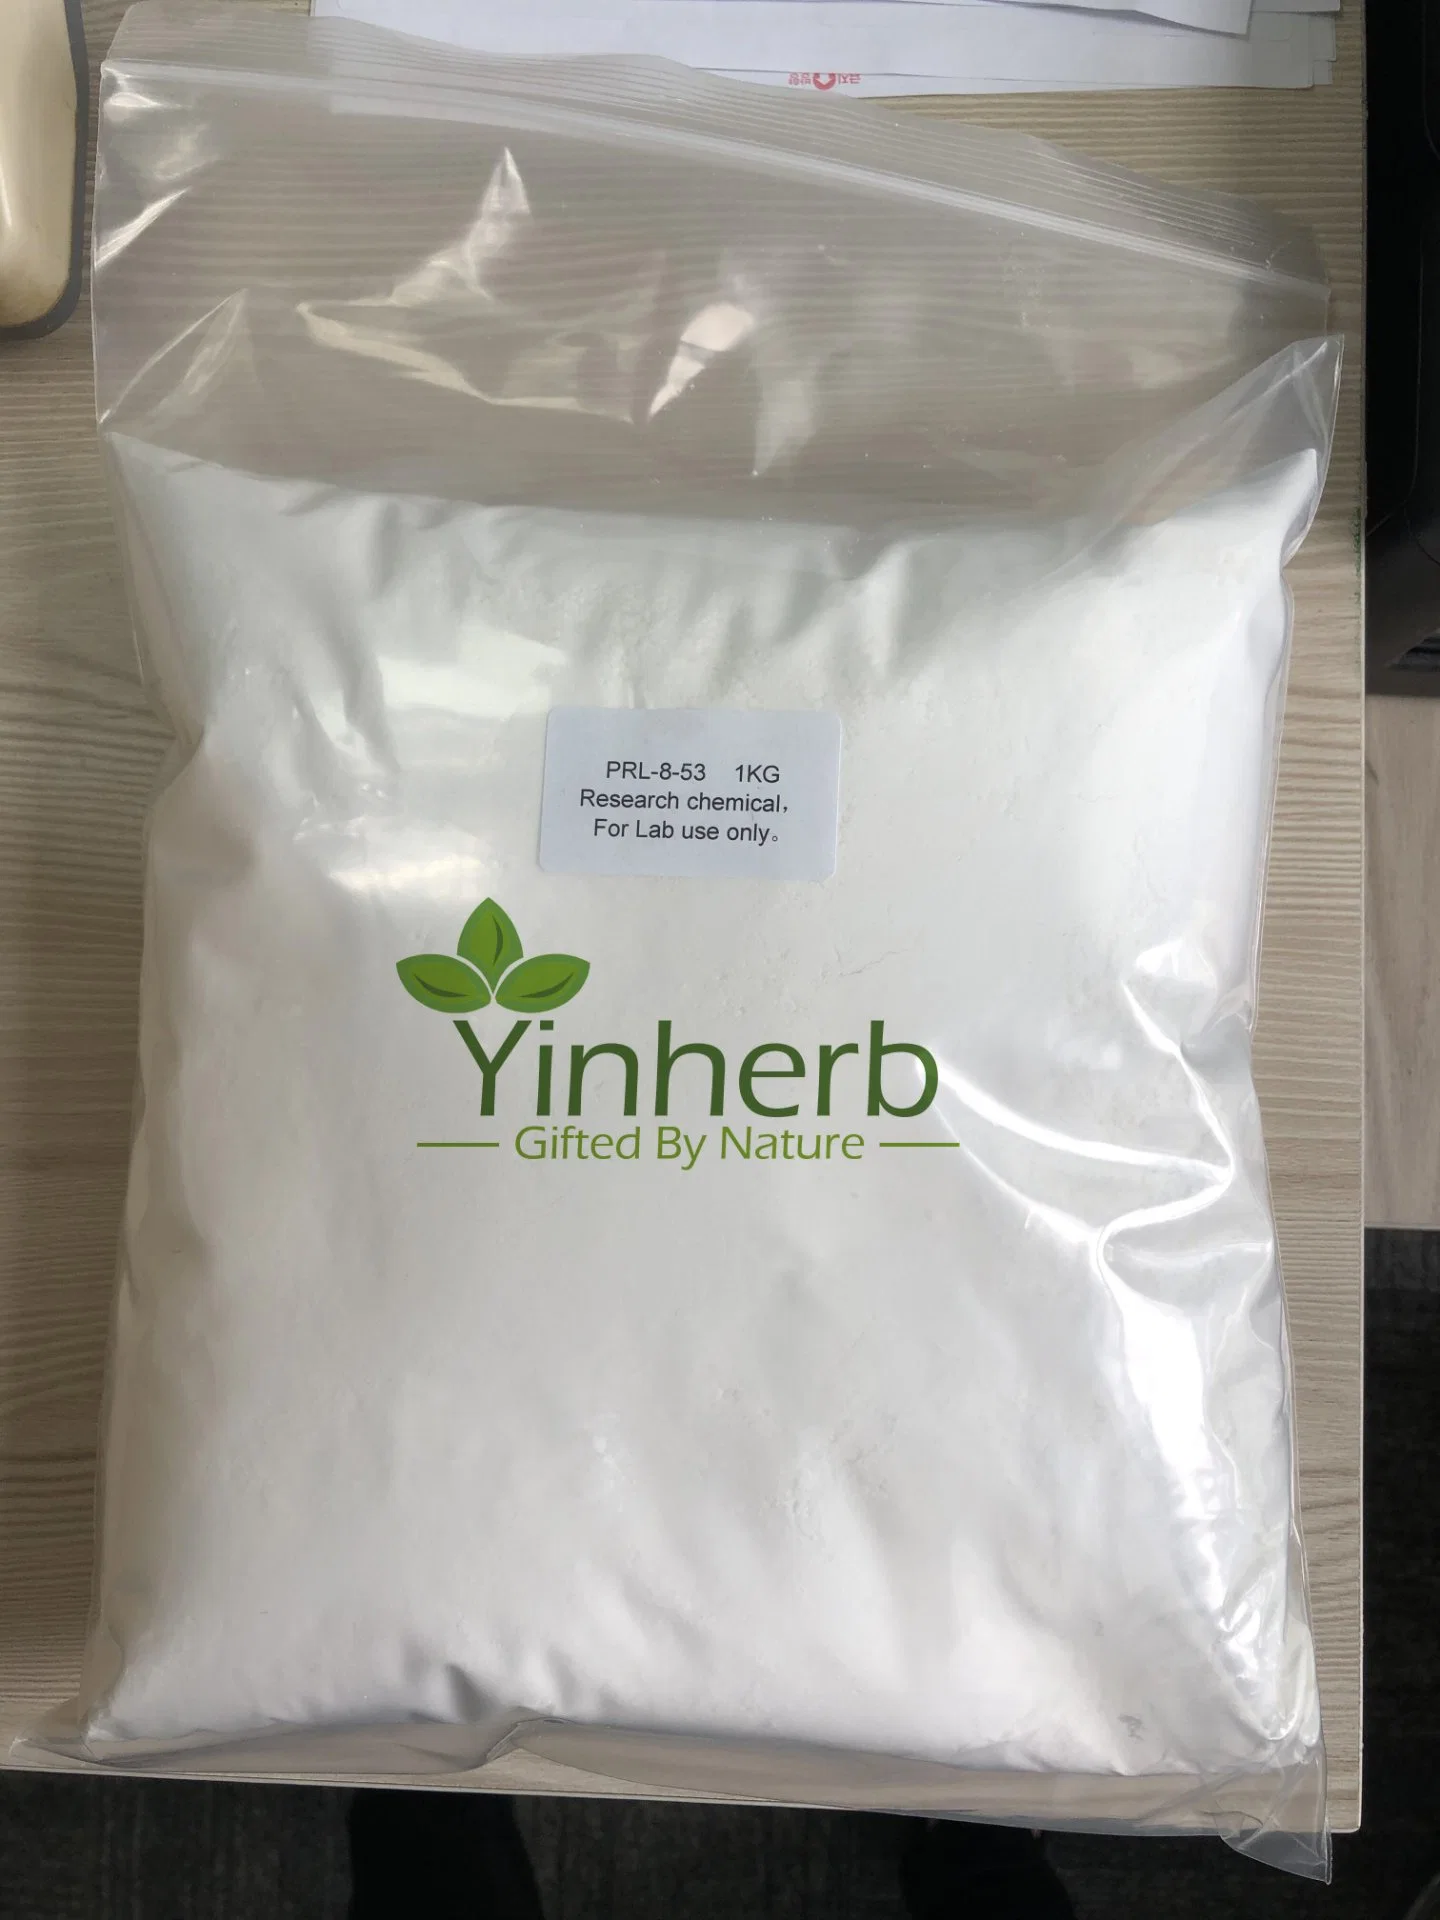 Laboratorio de un 99% de pureza Yinherb en polvo de calidad farmacéutica Nootropics-8-53-8-53 Prl Prl CAS 51352-87-5 para la mejora de la memoria